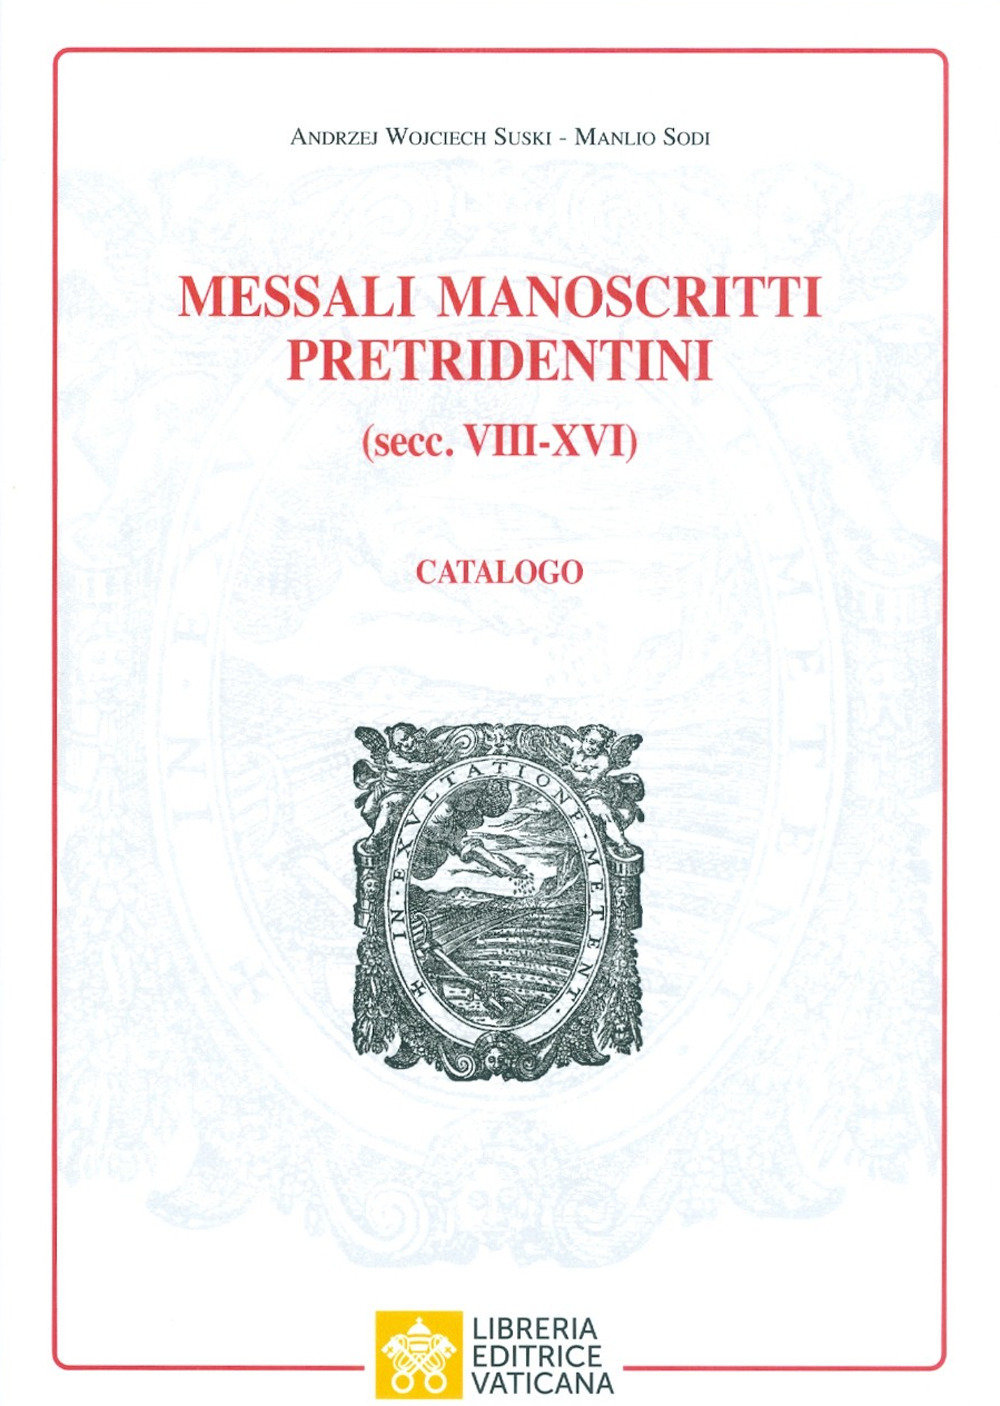 Image of Messali manoscritti pretridentini (secc. VIII?XVI). Catalogo